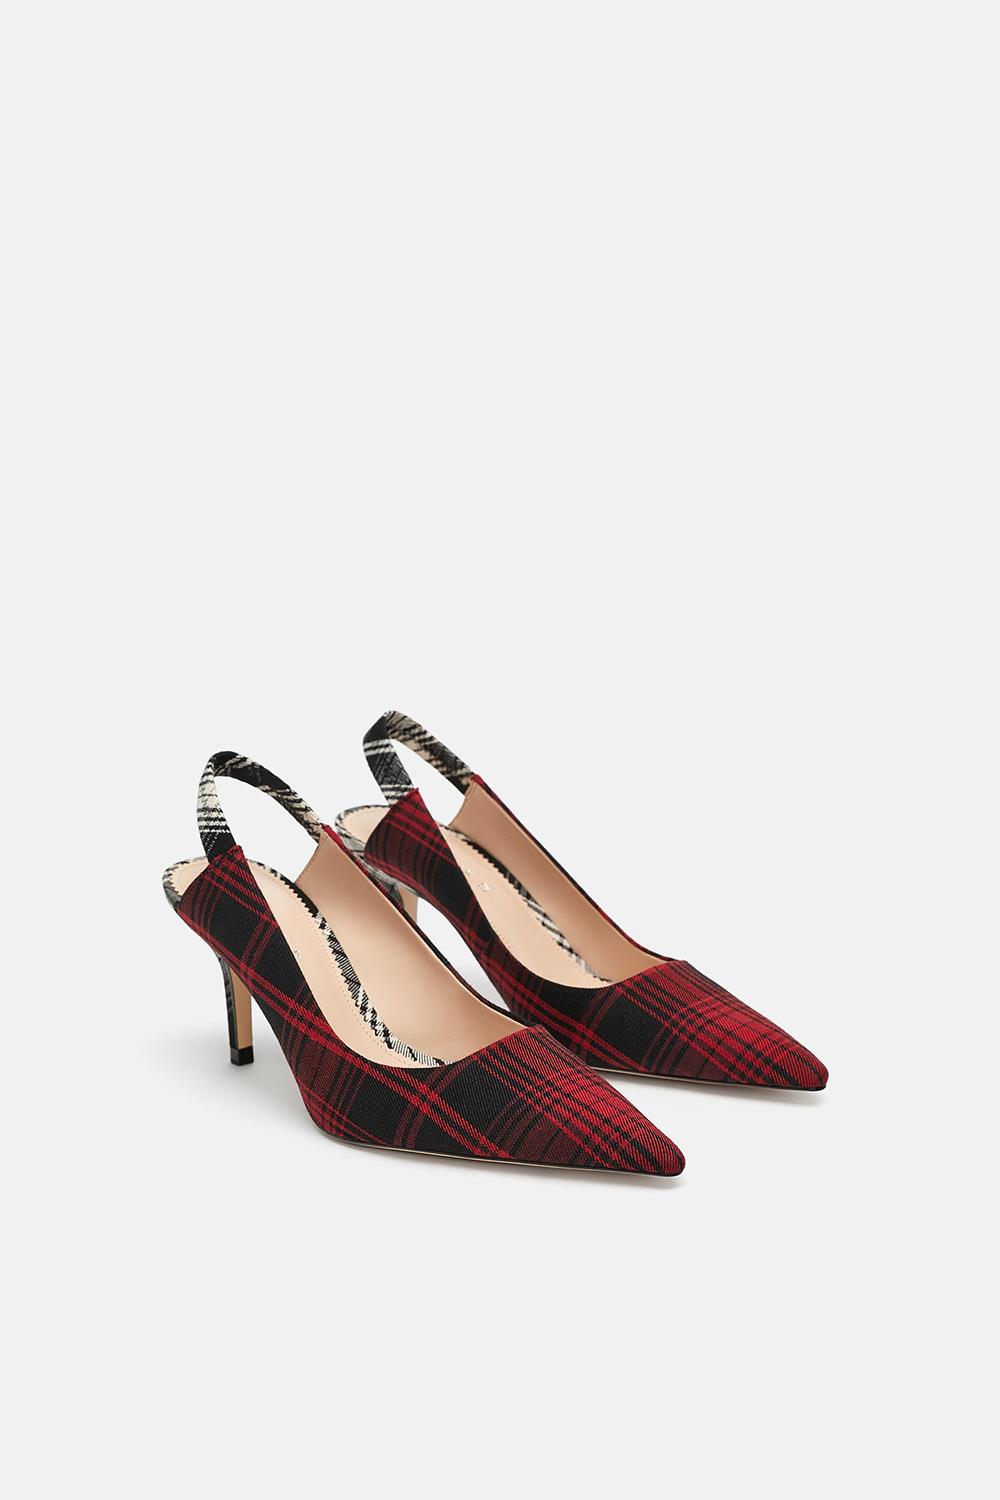 Estos zapatos de fiesta para mujer Zara son que estás buscando